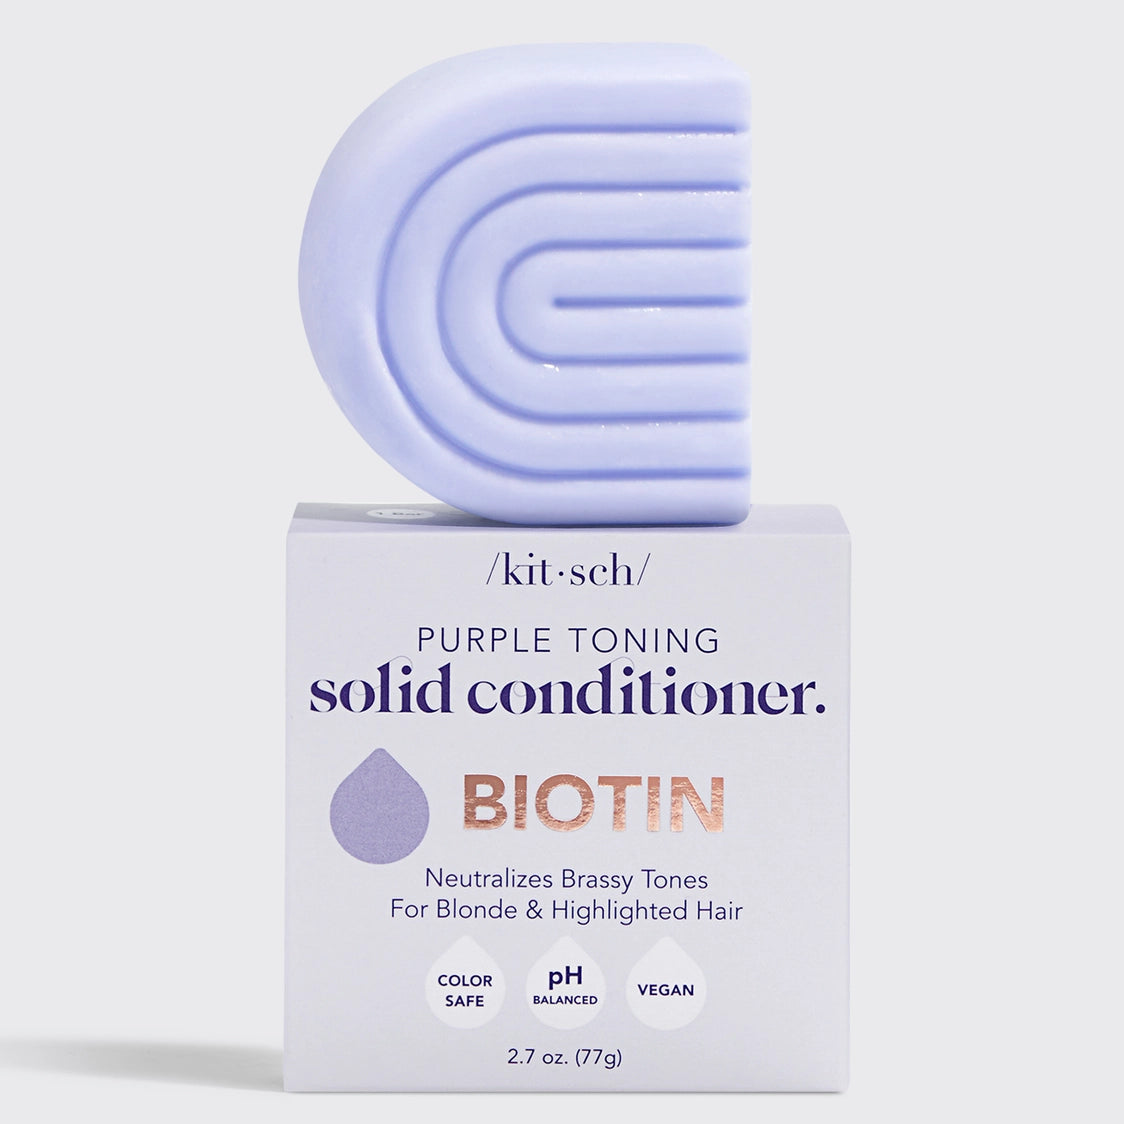 Kitsch - Purple Toning Biotin Solid Conditioner